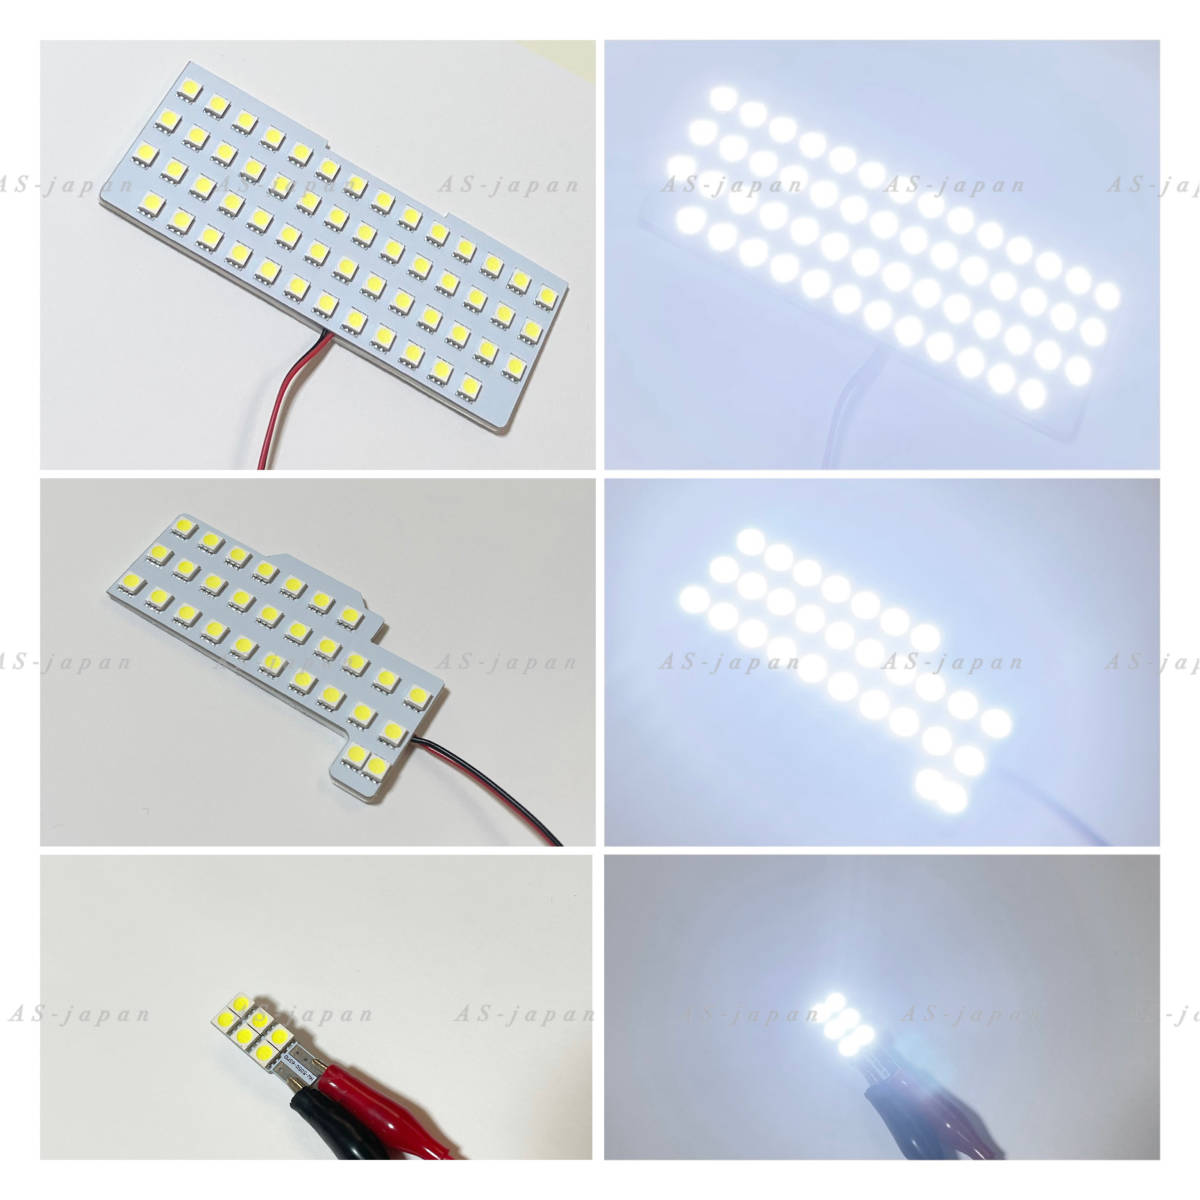 スズキ スペーシア / スペーシアカスタム [ MK53S ] 専用設計 LED ルームランプ 純白光 高輝度 SMD 2017(H29)年12月〜